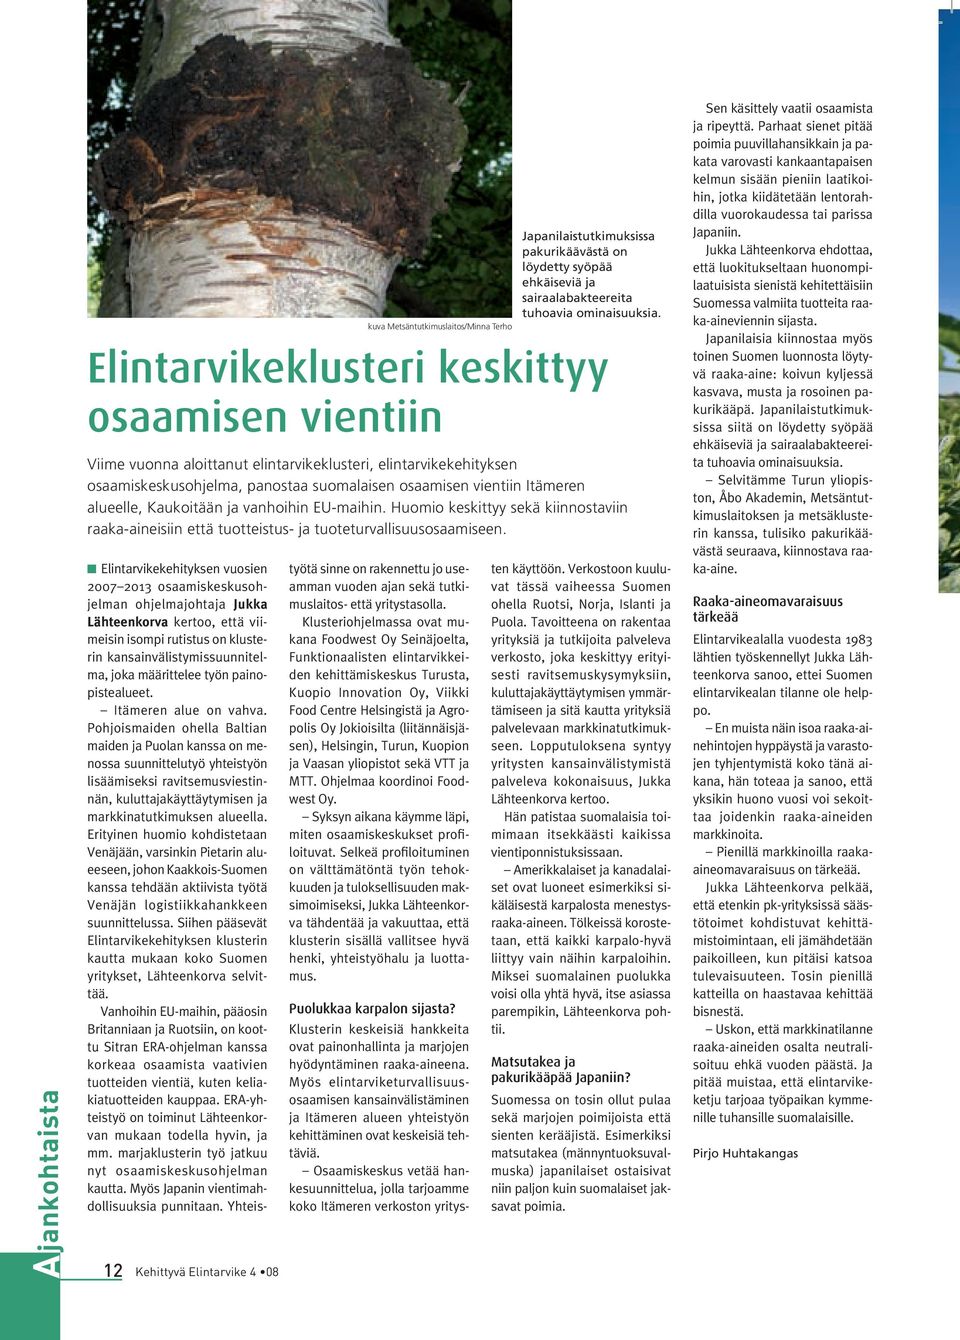 n Elintarvikekehityksen vuosien 2007 2013 osaamiskeskusohjelman ohjelmajohtaja Jukka Lähteenkorva kertoo, että viimeisin isompi rutistus on klusterin kansainvälistymissuunnitelma, joka määrittelee